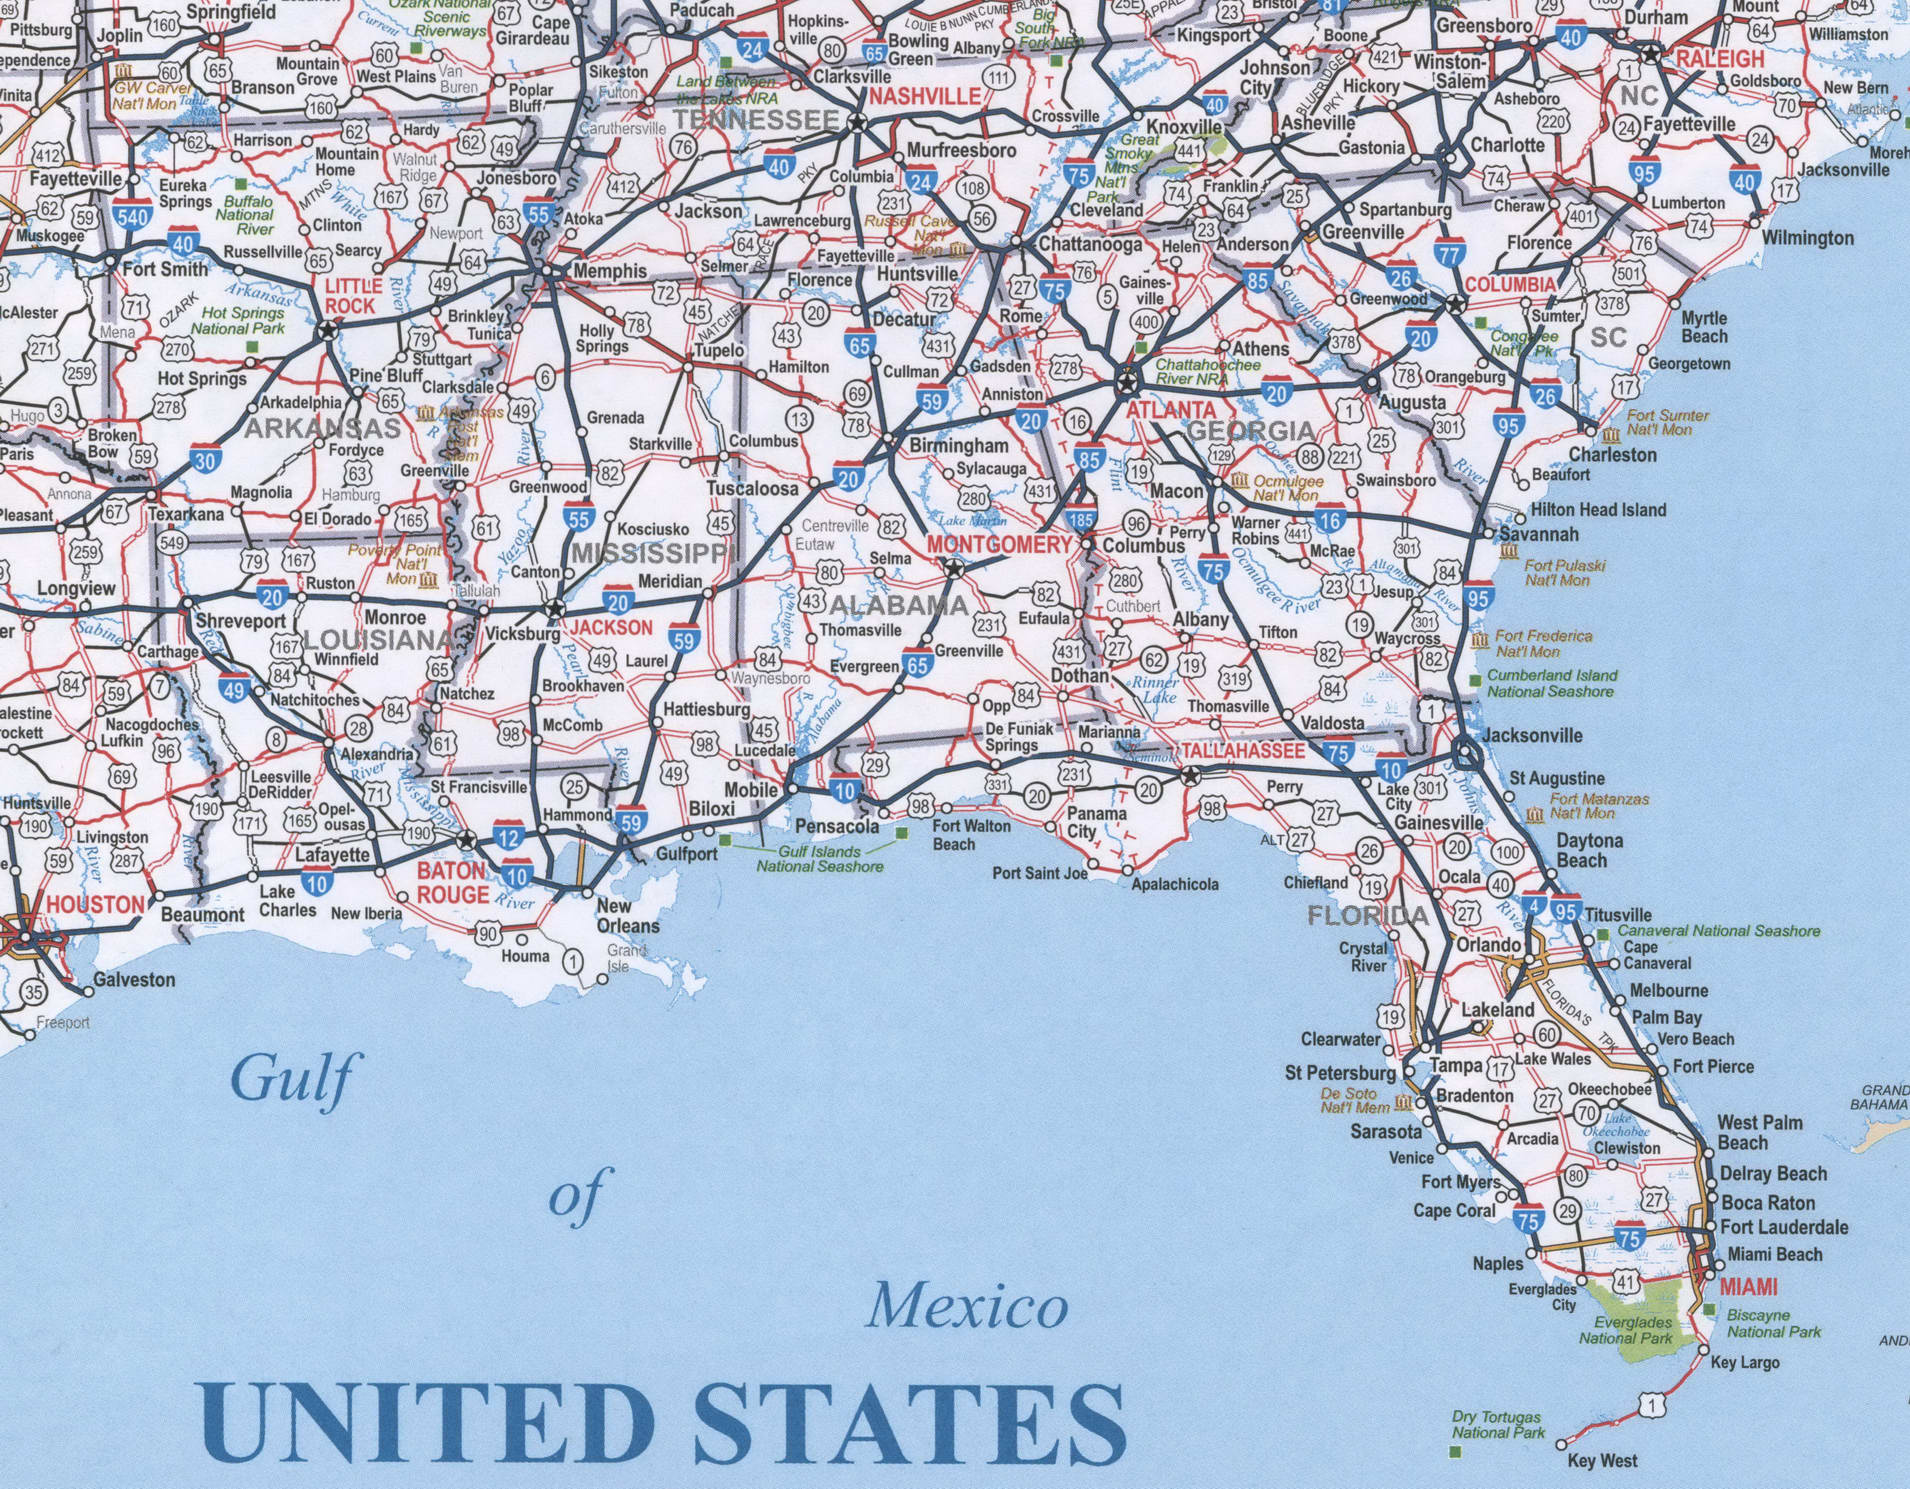 Map of SouthEast USA